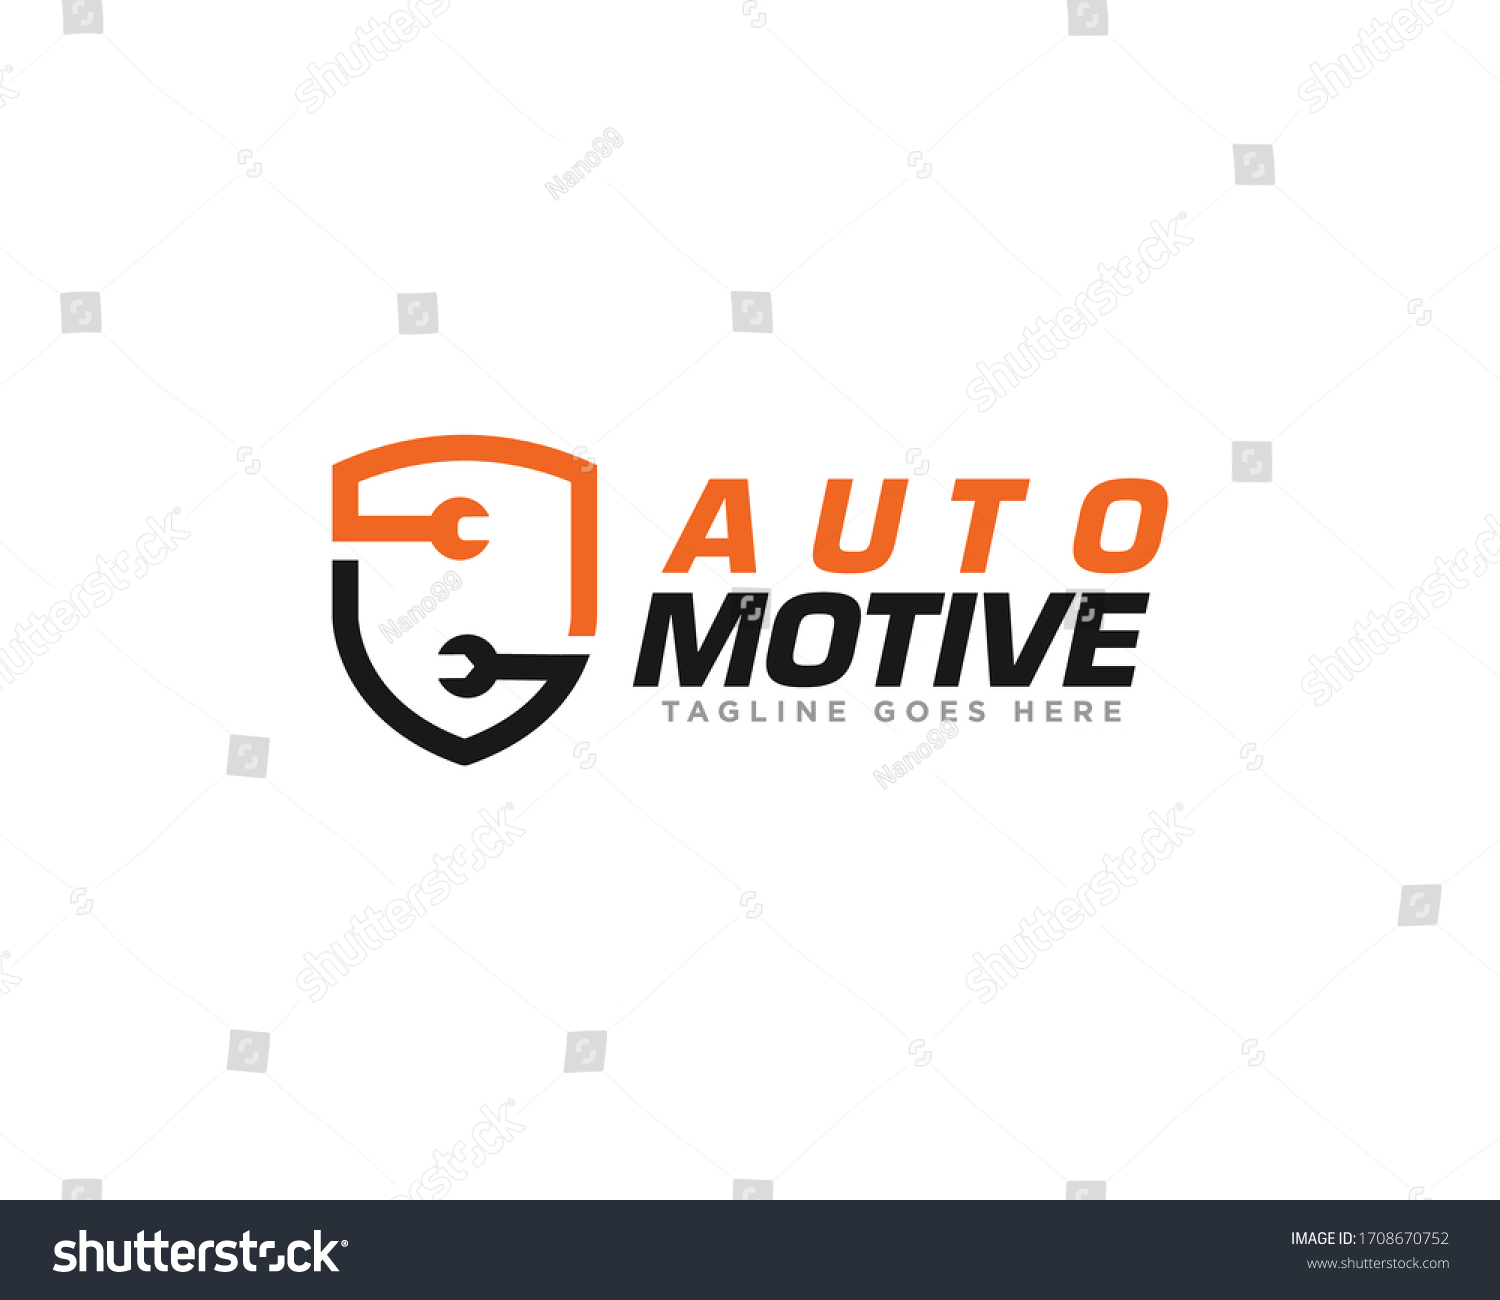 Car Service Logo Design Vector Stock Vector (Royalty Free) 1708670752 ...